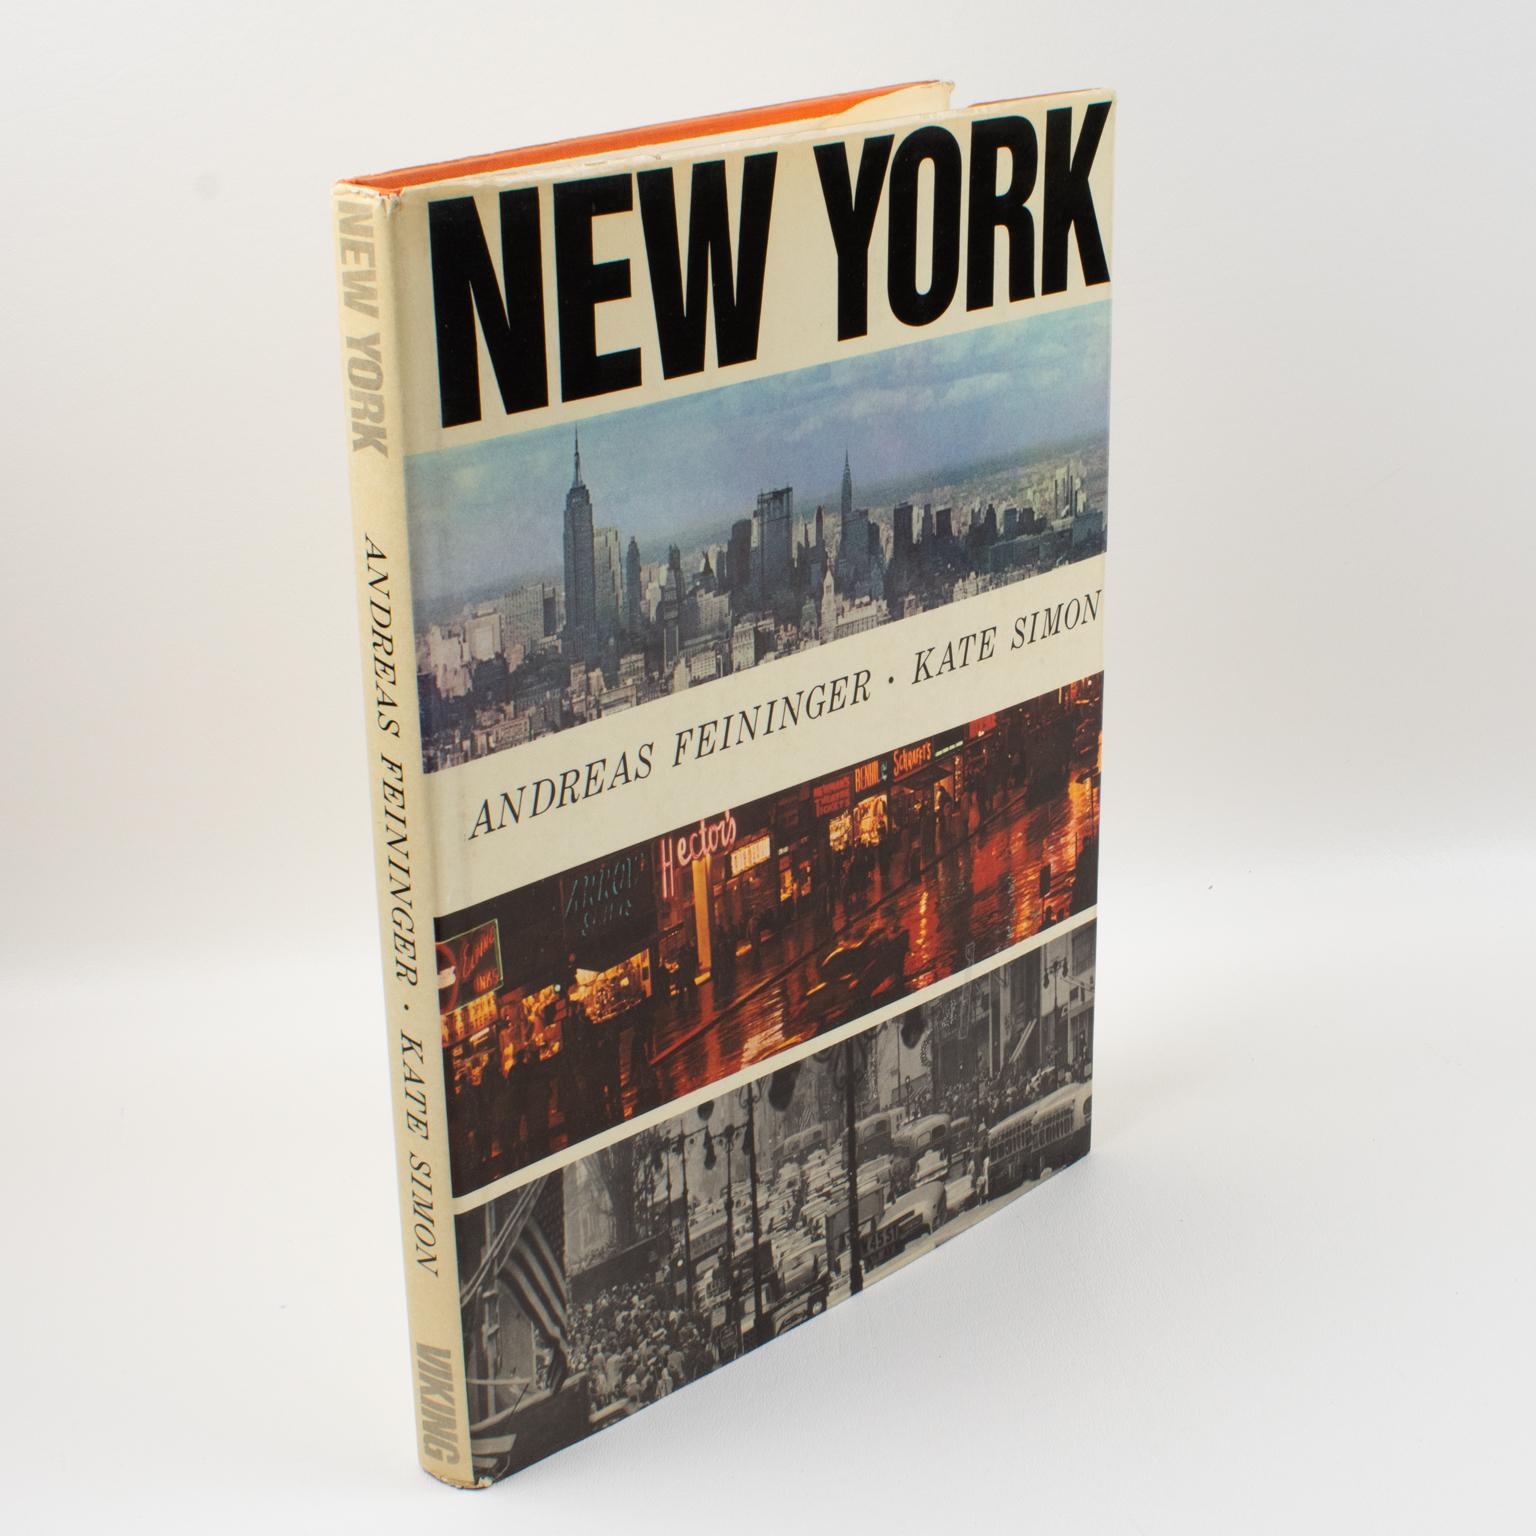 New York Photographs, livre d'Andreas Feininger, 1964.
Il s'agit d'un étonnant document photographique de l'époque : Un portrait de New York. Photoreproductions en couleur et en noir et blanc d'Andreas Whiting (1906-1999), photographe américain et